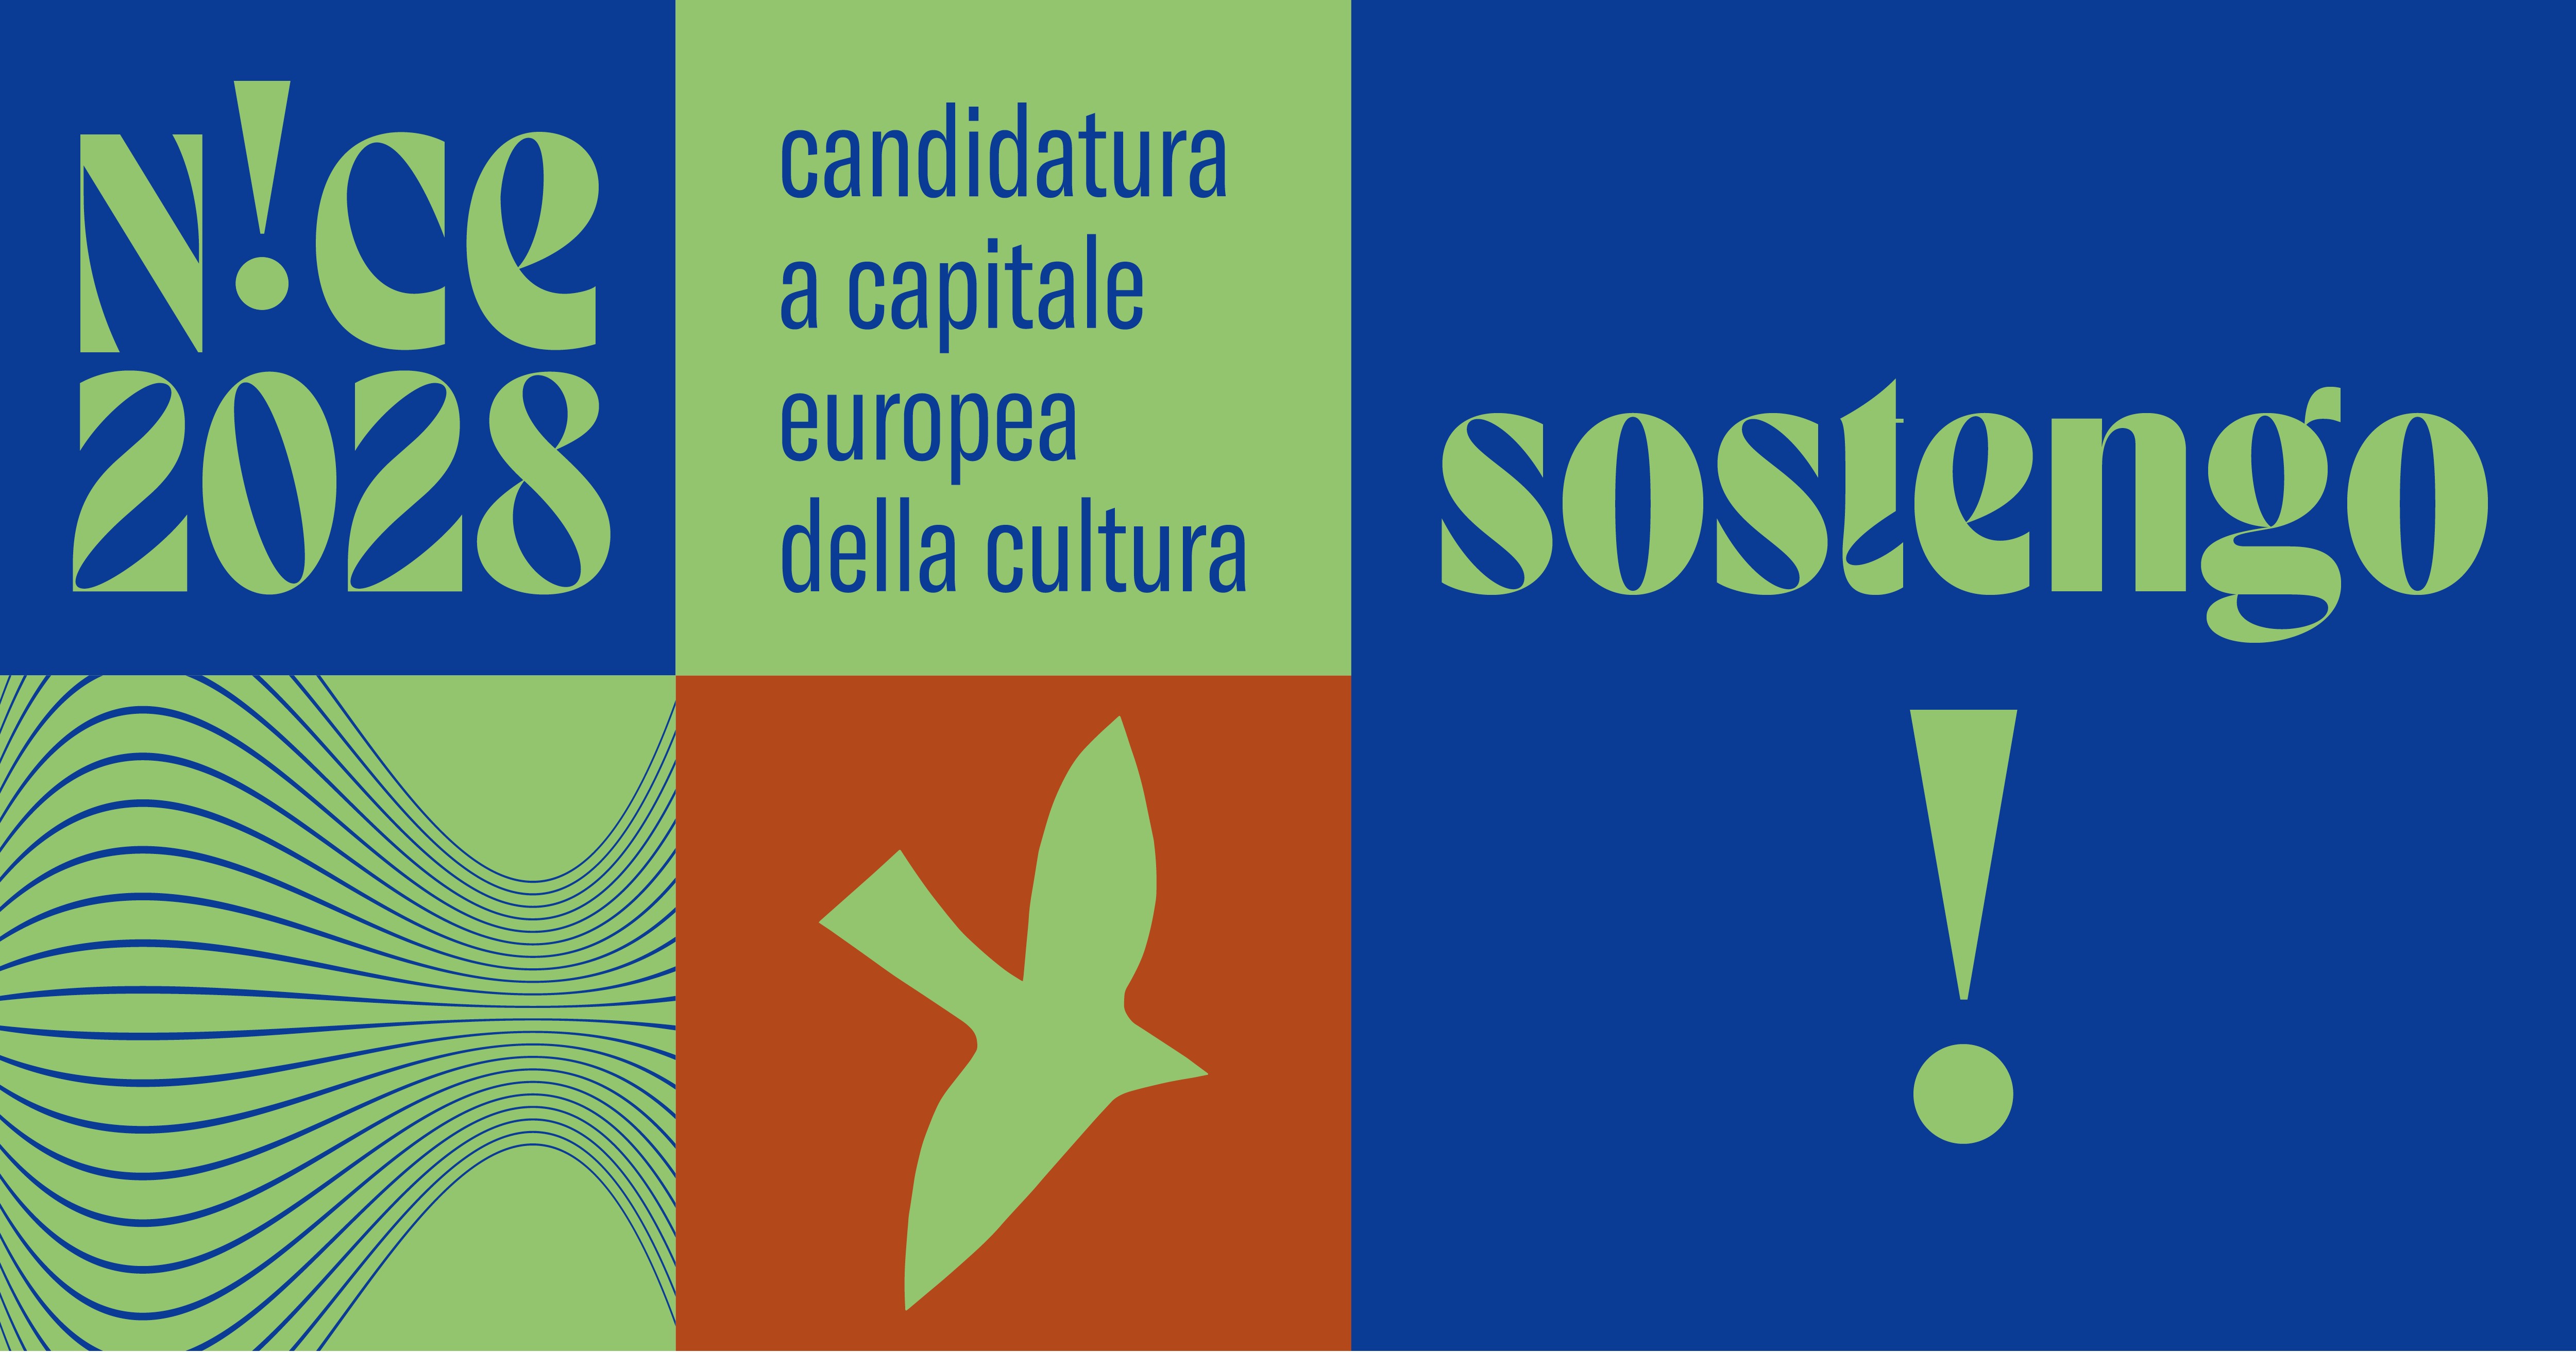  E proprio nel segno di questa rinnovata sinergia, il sindaco Coppola, in occasione dell’iniziativa, ha raccolto l’invito del collega Christian Estrosi, a sostenere la candidatura di Nizza a capitale europea della Cultura 2028. 